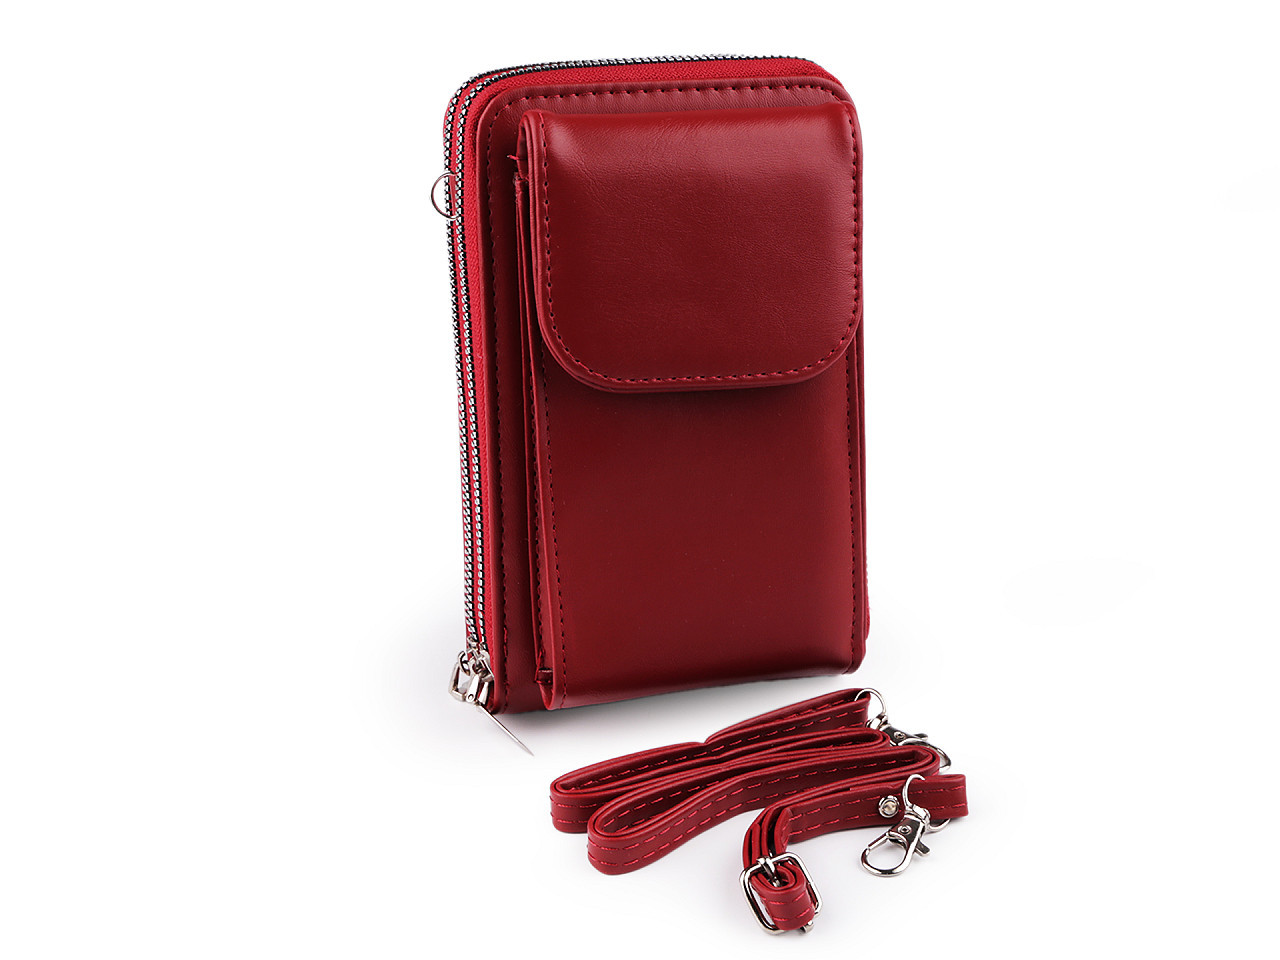 Peněženka s kapsou na mobil přes rameno crossbody 11x18 cm, barva 1 červená